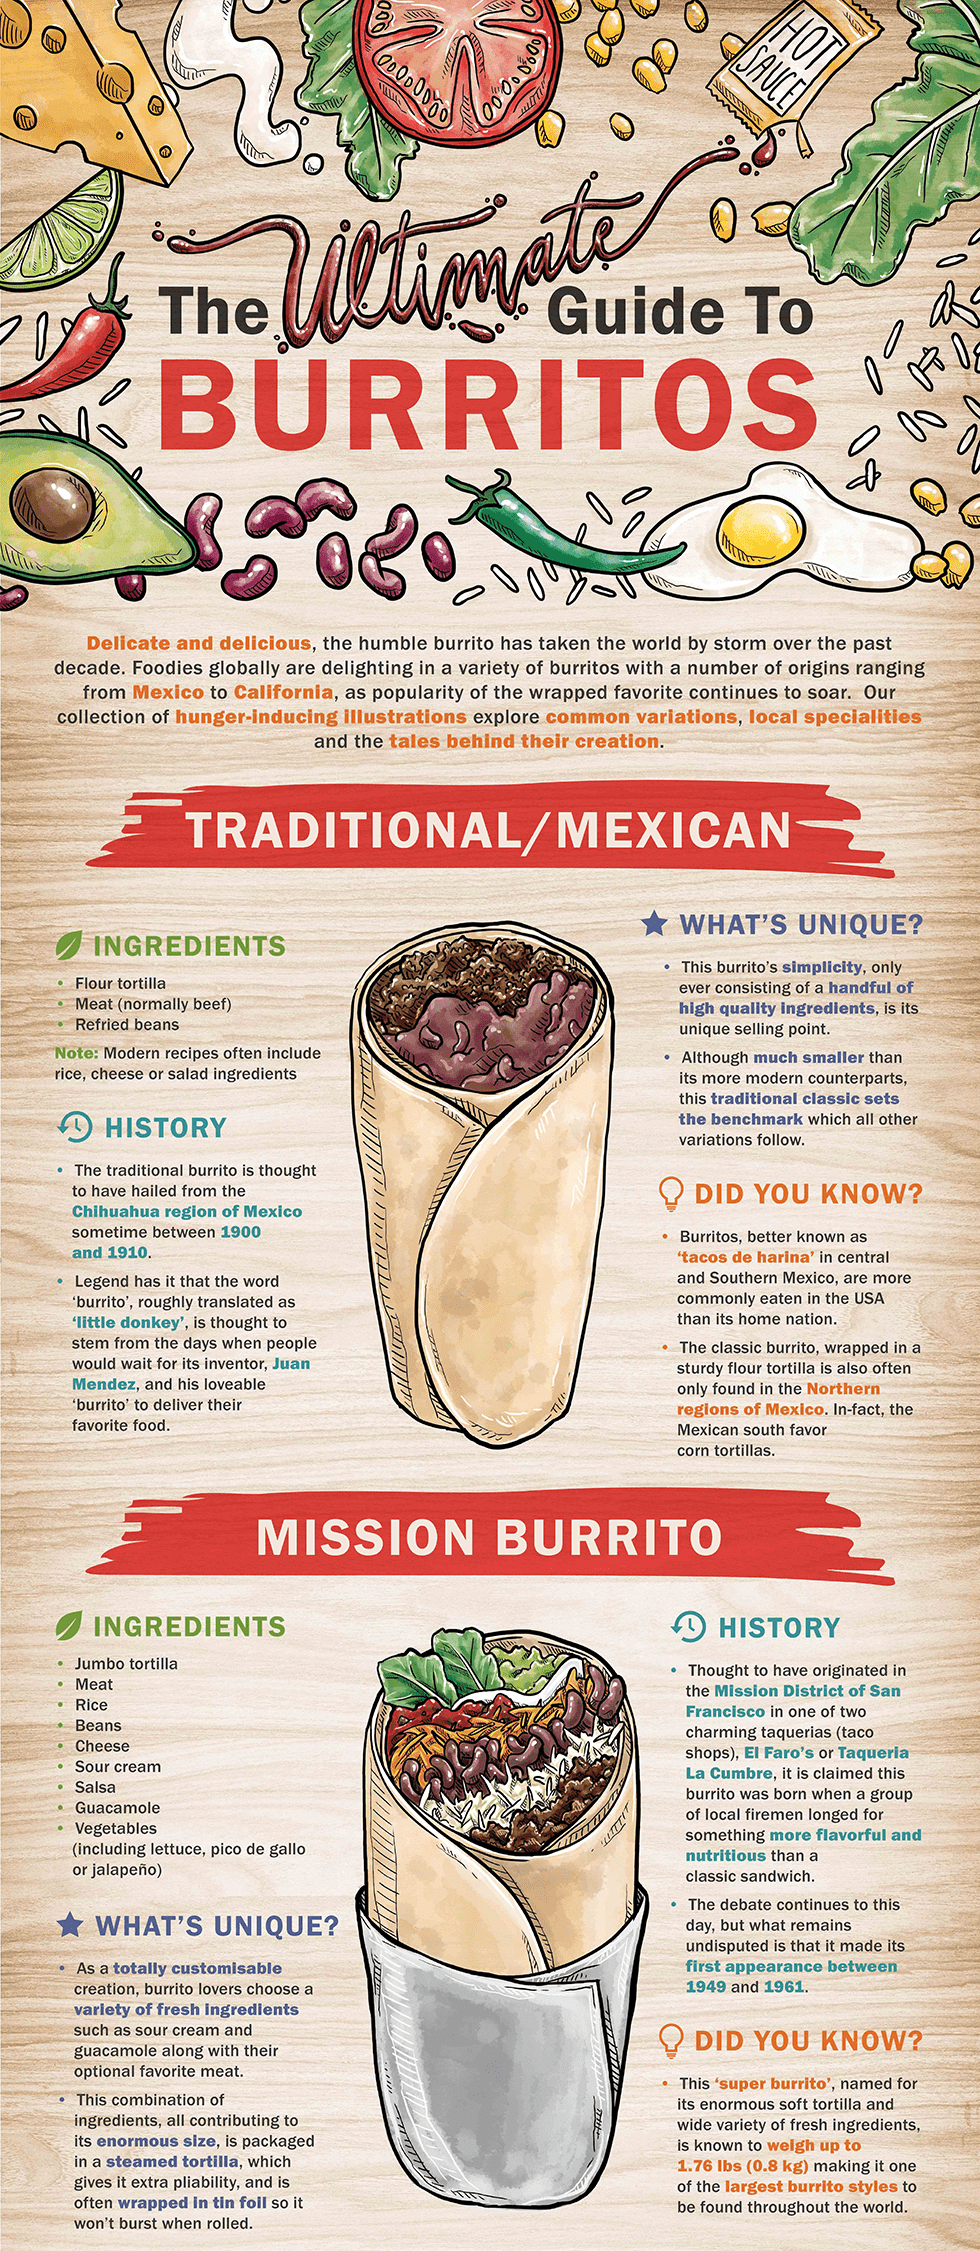 burrito style origins